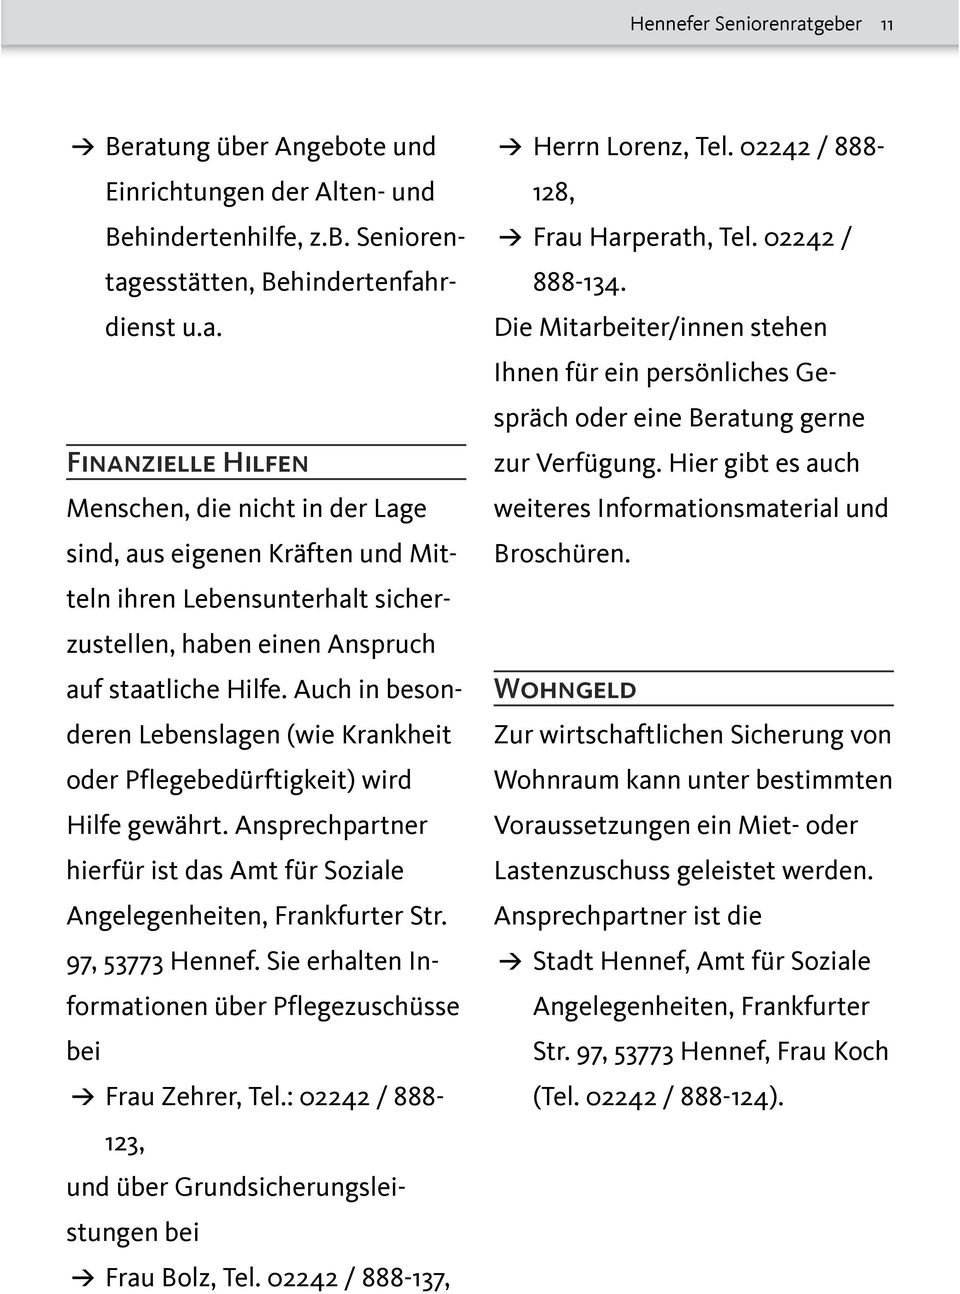 Sie erhalten Informationen über Pflegezuschüsse bei Frau Zehrer, Tel.: 02242 / 888-123, und über Grundsicherungsleistungen bei Frau Bolz, Tel. 02242 / 888-137, Herrn Lorenz, Tel.